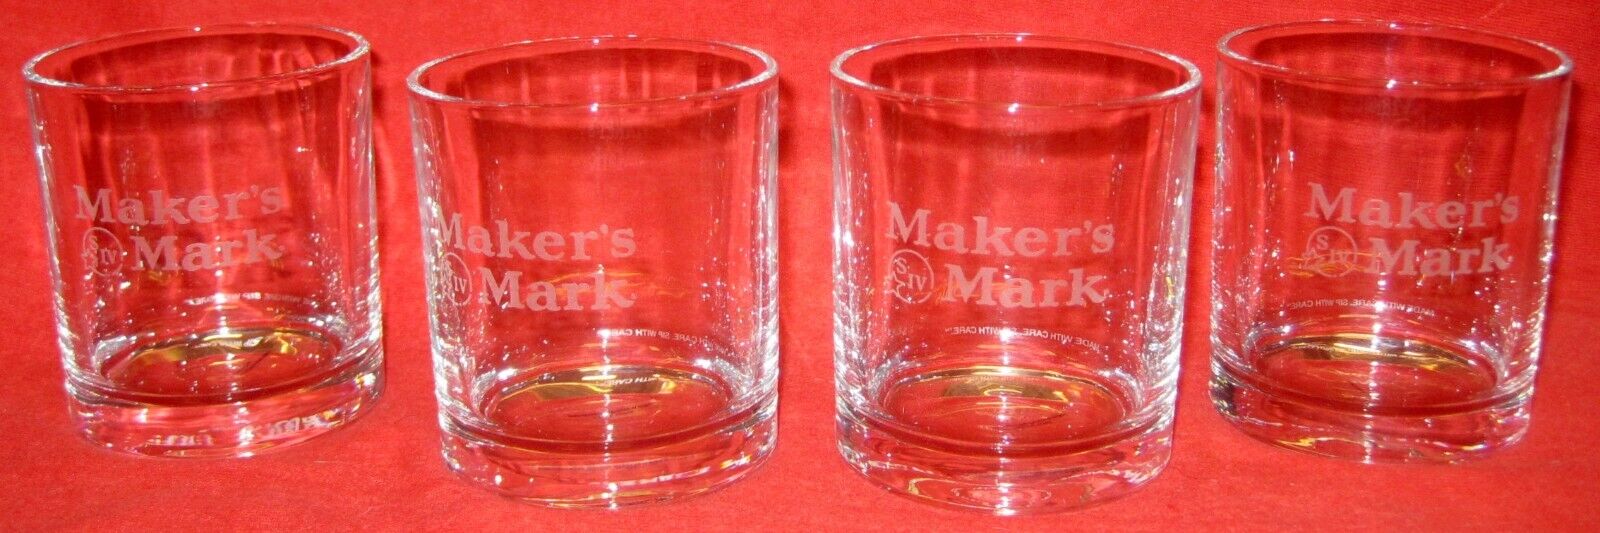 Set 4 New Makers Mark Bourbon Whiskey Kentucky Etched Rocks Glasses 8 Oz More Av